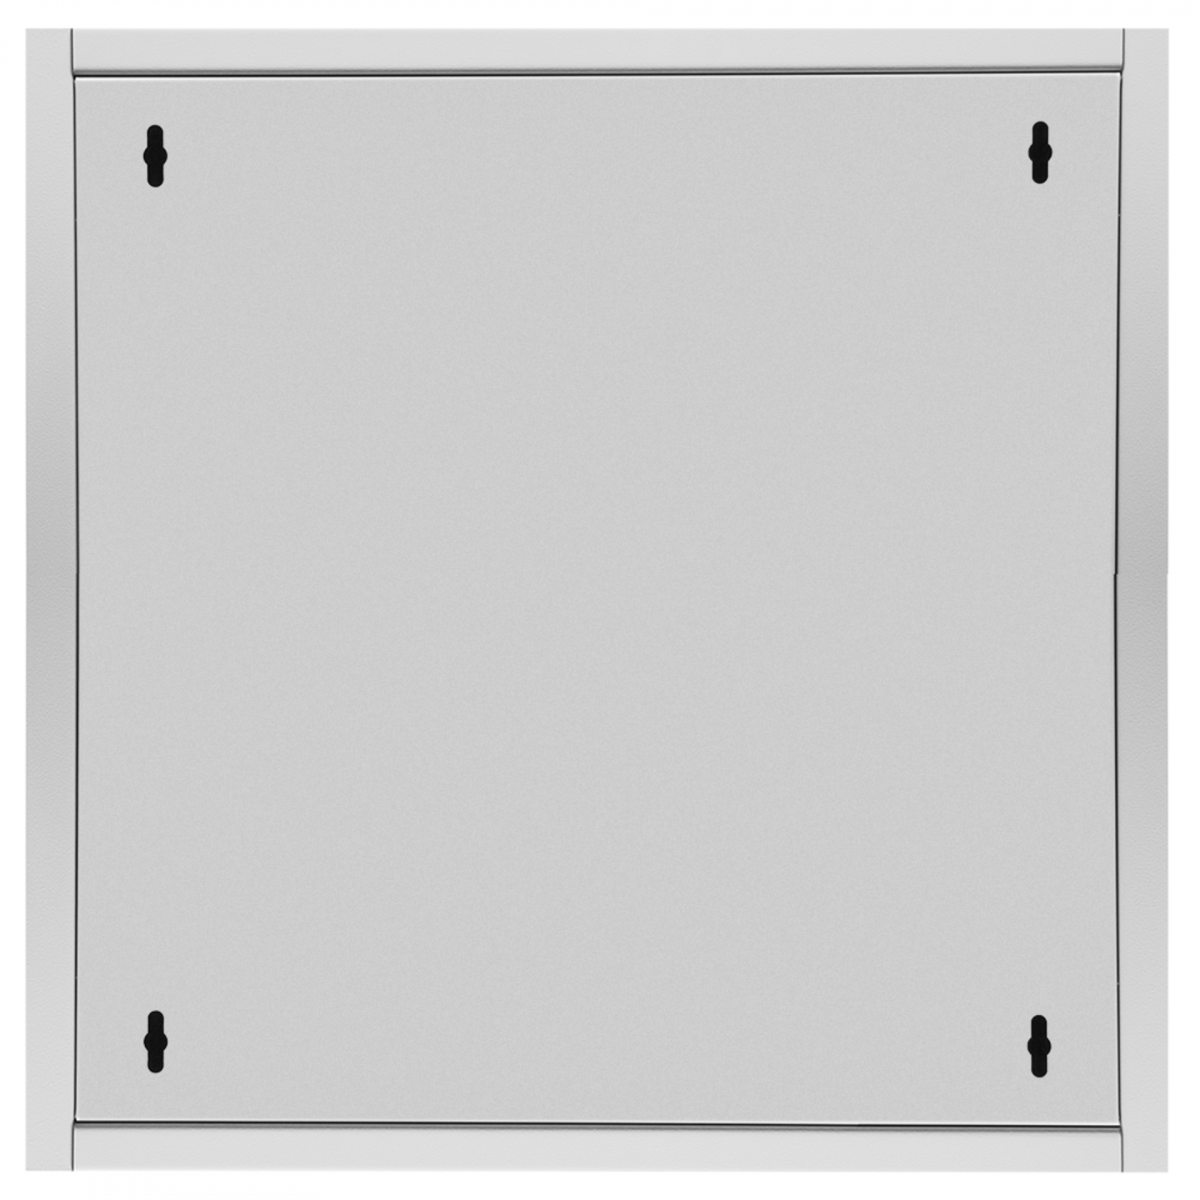 Шкаф универсальный разборный 19" 15U 720x580x600мм (ВШГ)